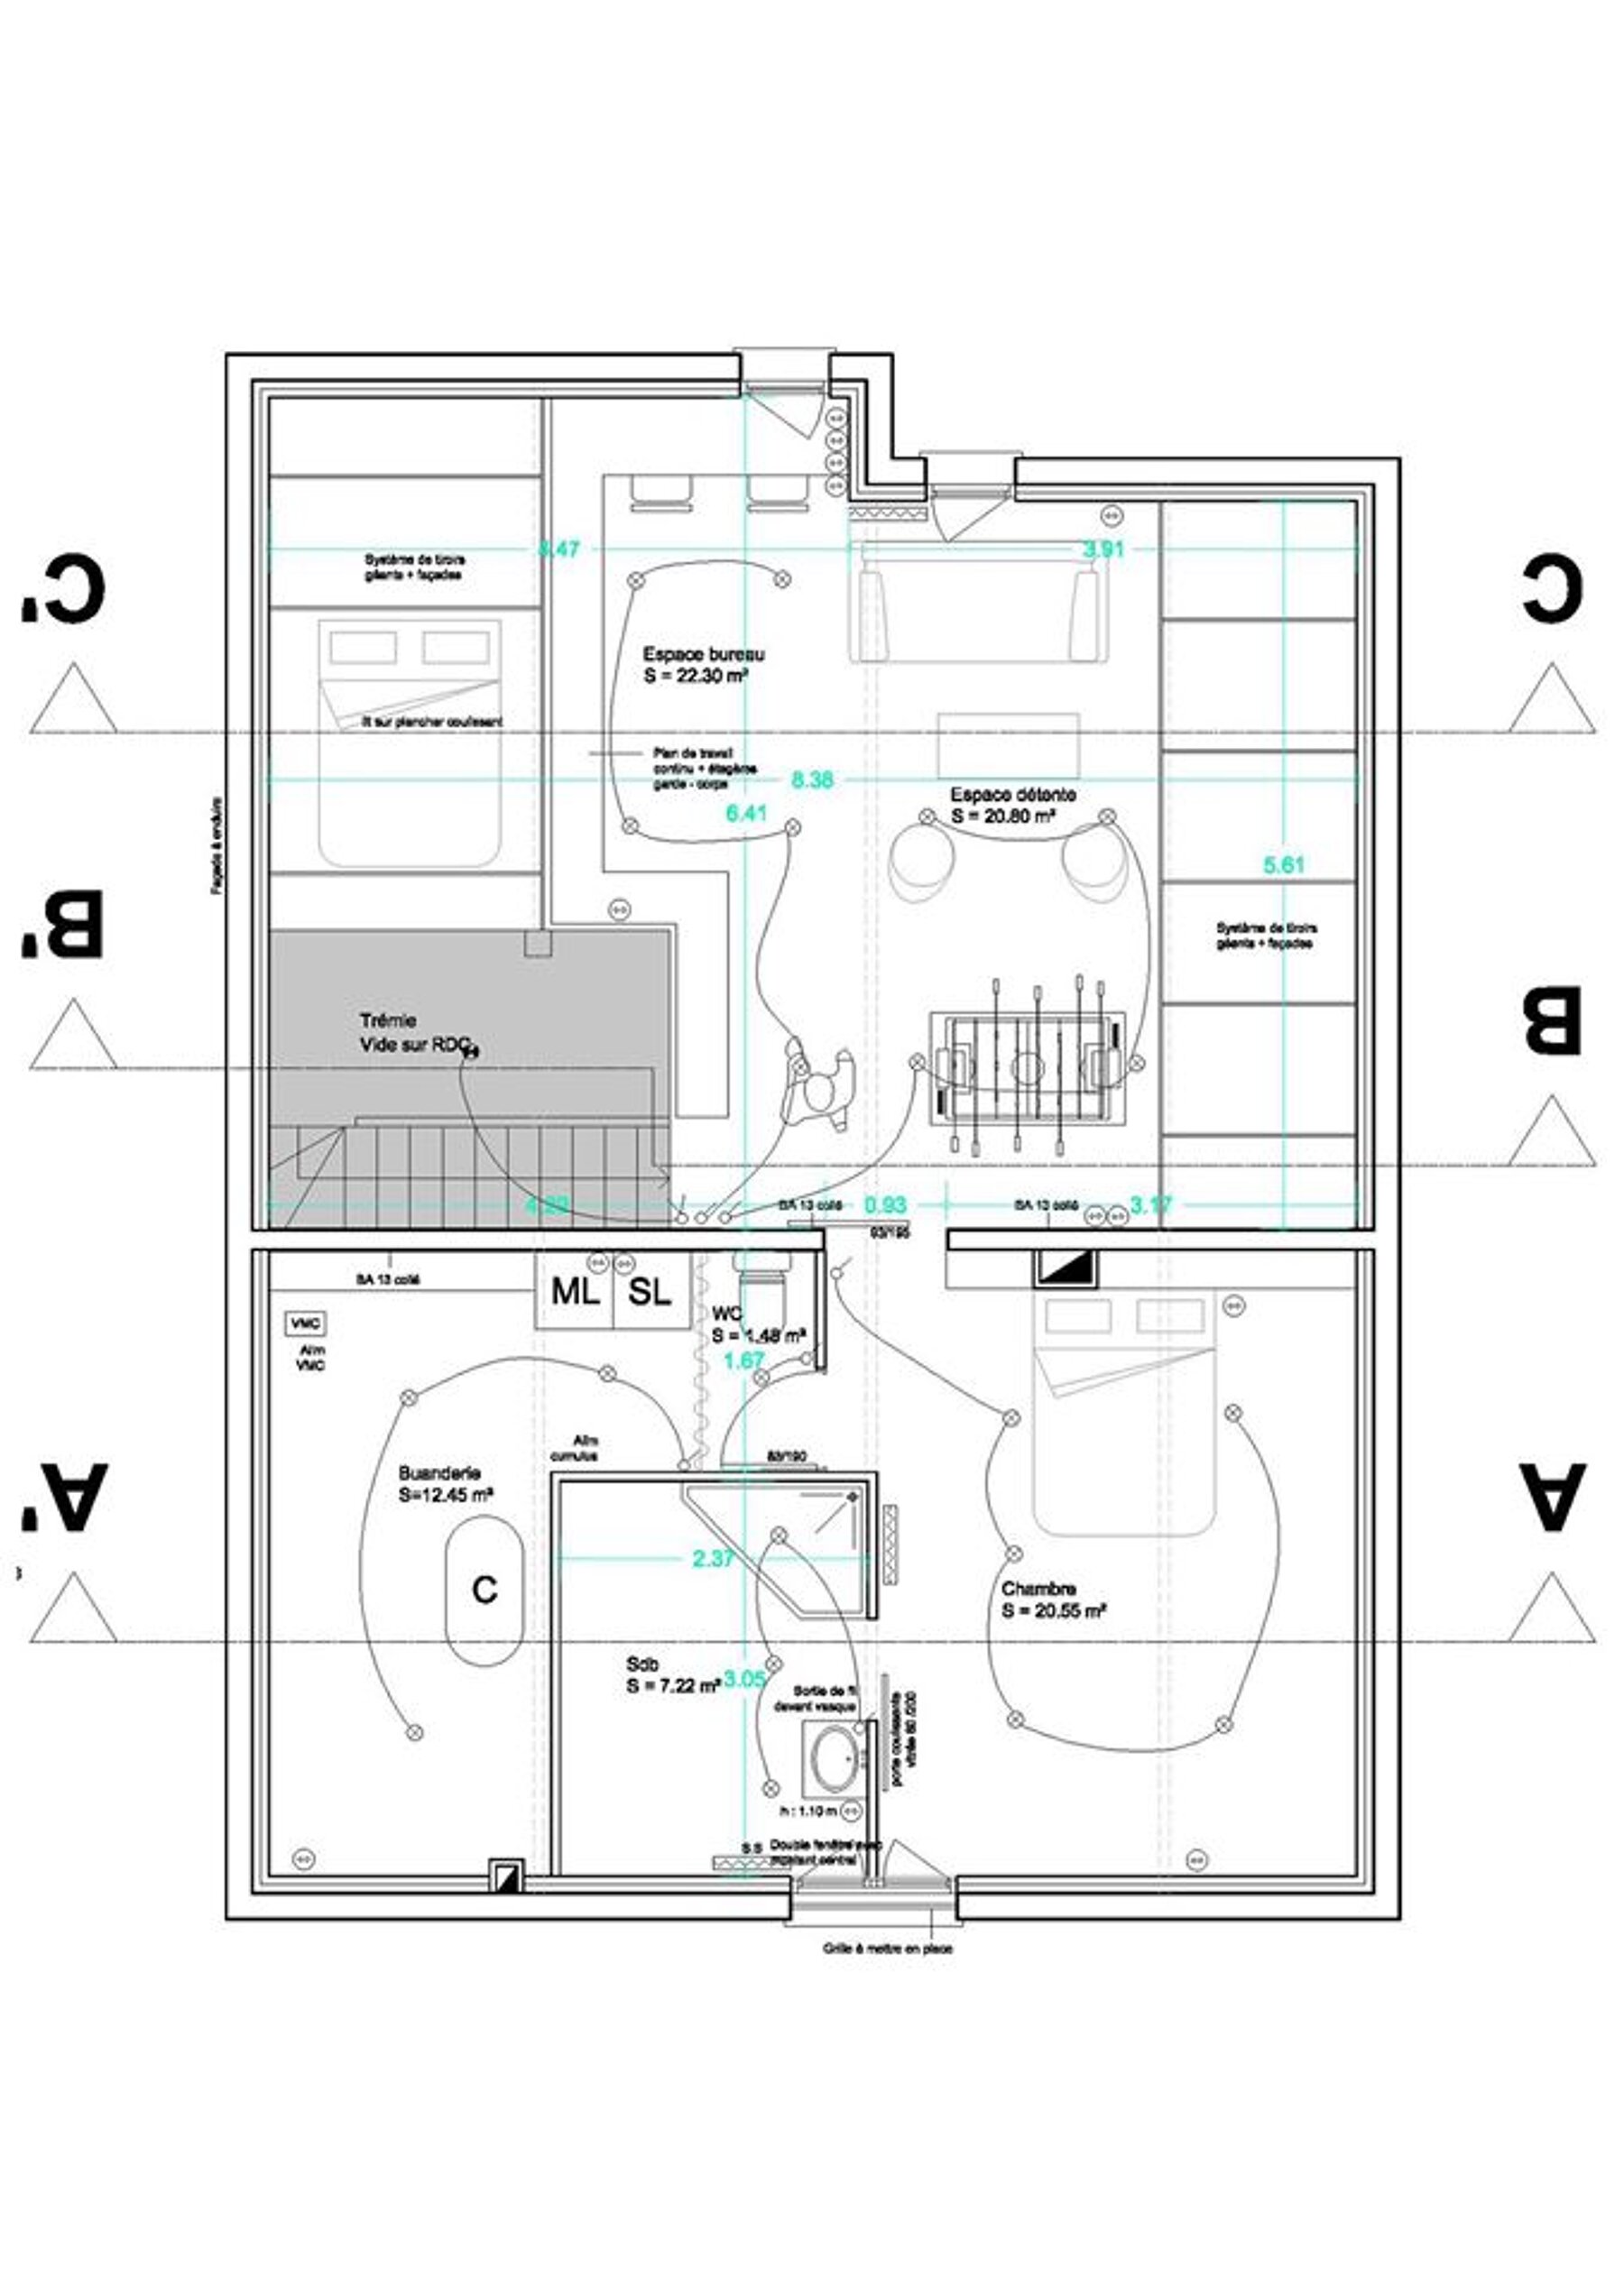 Réaménagement intérieur - Maison individuelle par un architecte Archidvisor